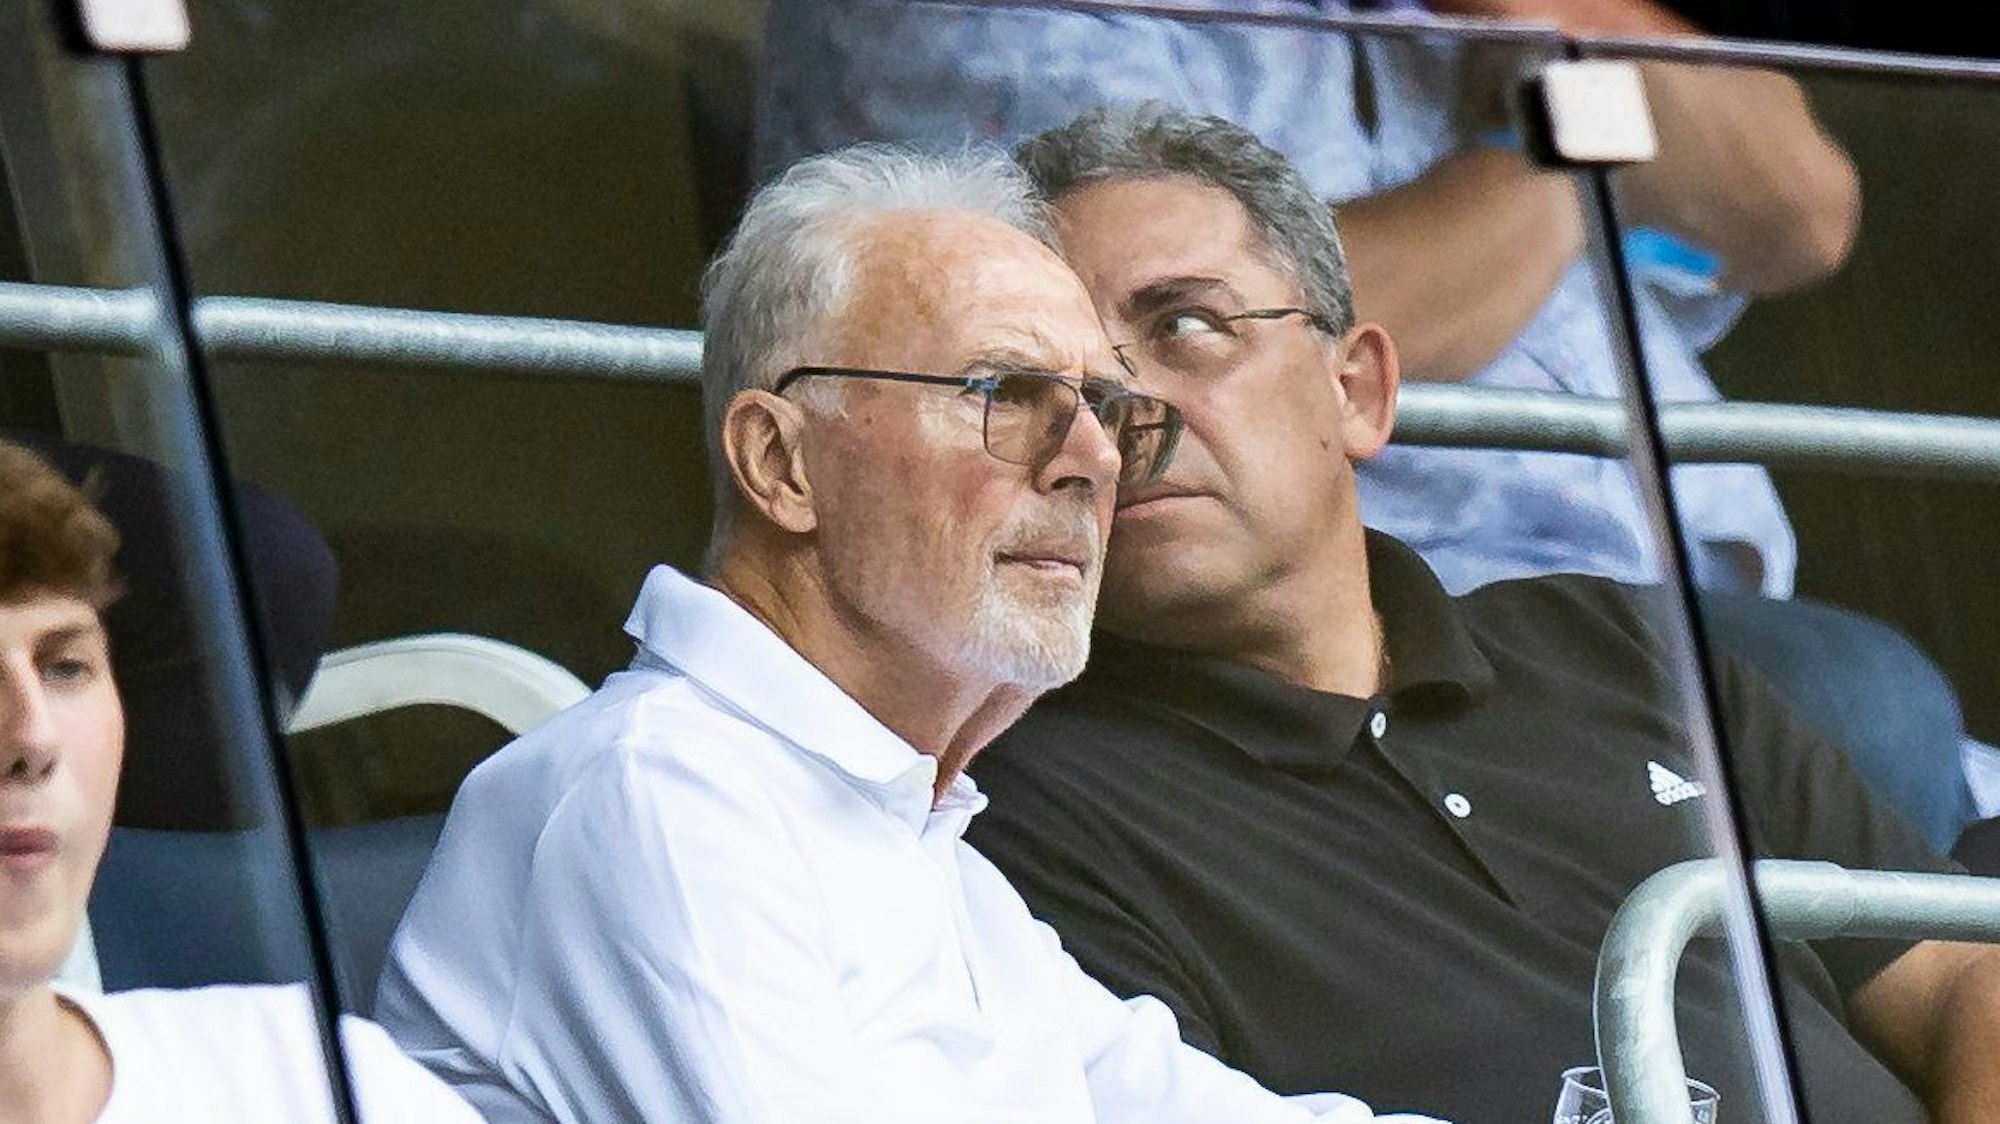 Franz Beckenbauer sitzt im Publikum bei einem Fußballspiel. Neben ihm ein Mann. Beckenbauer trägt eine getönte Brille und schaut mit ernster Miene auf das Spielfeld. Er trägt ein weißes Oberteil.